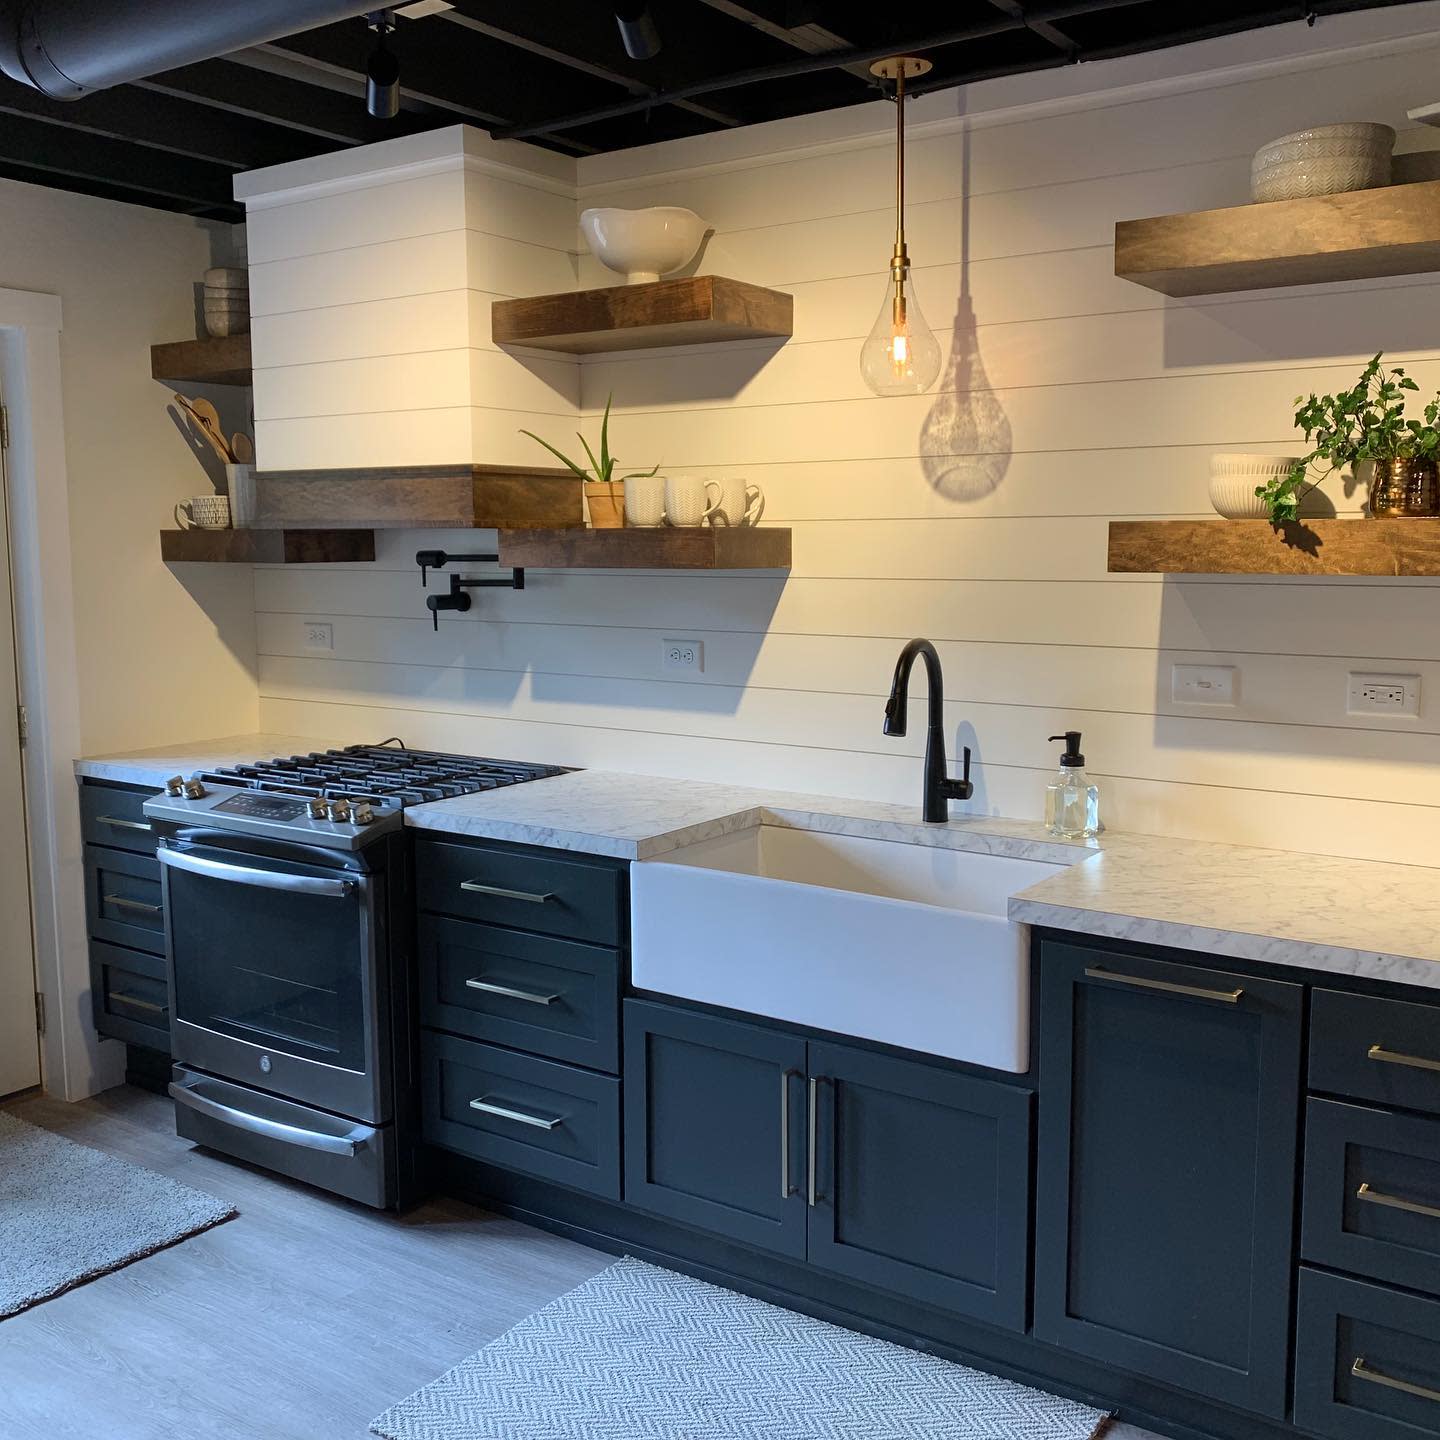 Design Basement Kitchen Ideas -thecarpentershp